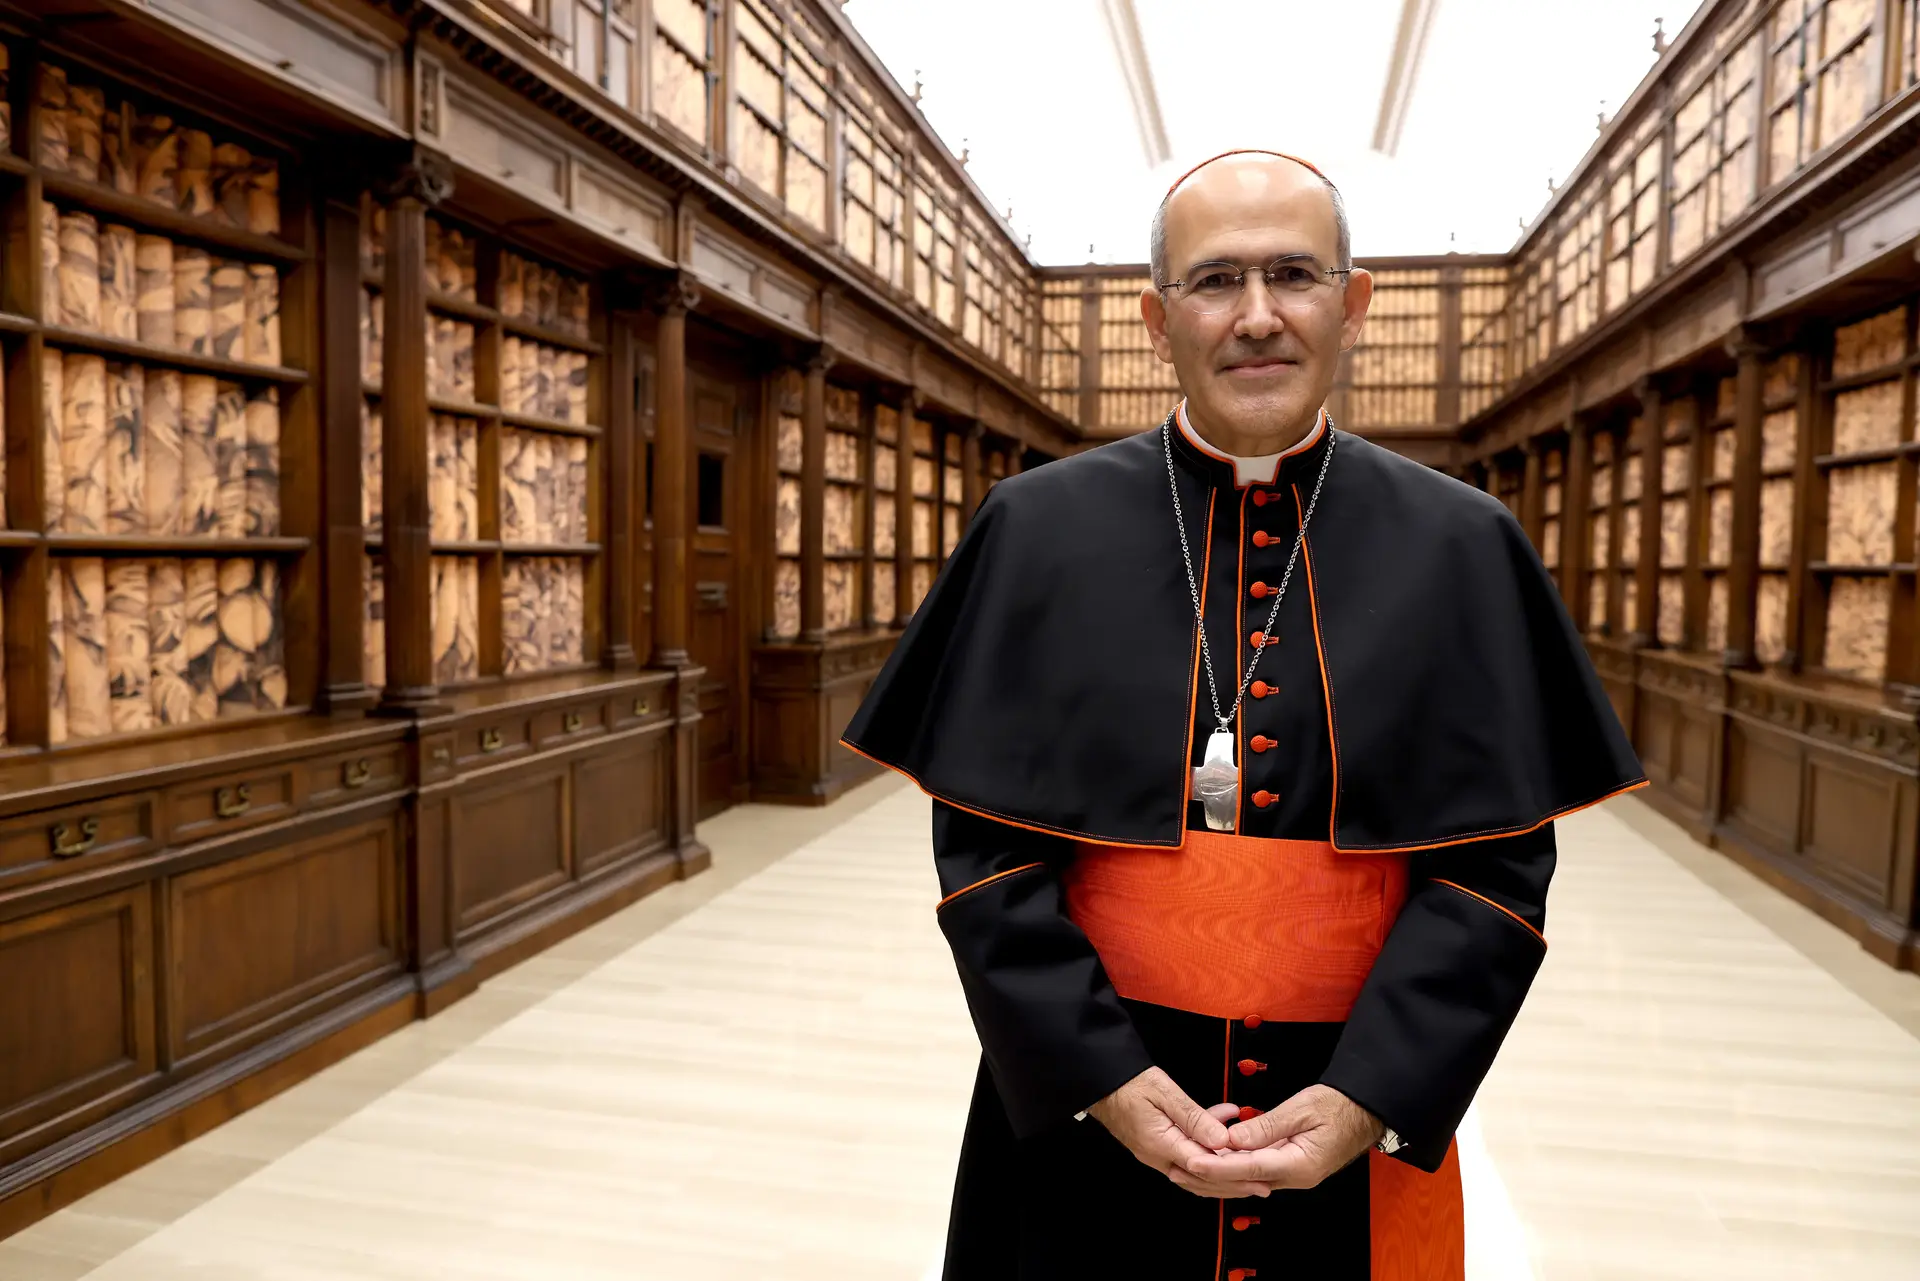 Cardeal Tolentino Mendonça é o novo prefeito do Dicastério para a Cultura e Educação do Vaticano